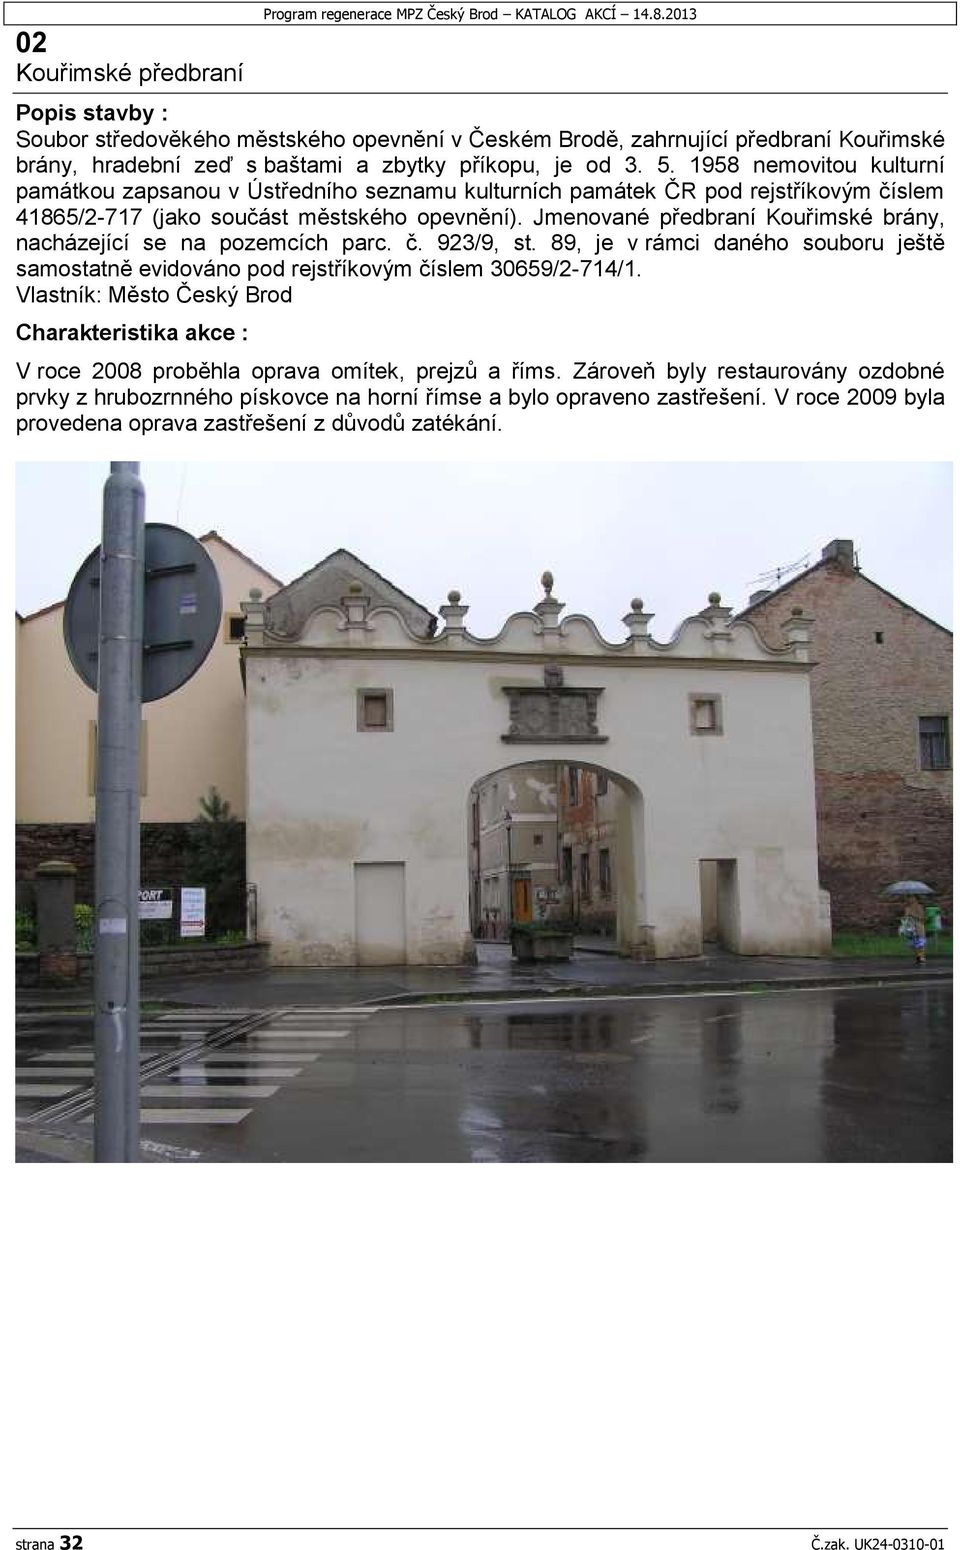 1958 nemovitou kulturní památkou zapsanou v Ústředního seznamu kulturních památek ČR pod rejstříkovým číslem 41865/2-717 (jako součást městského opevnění).